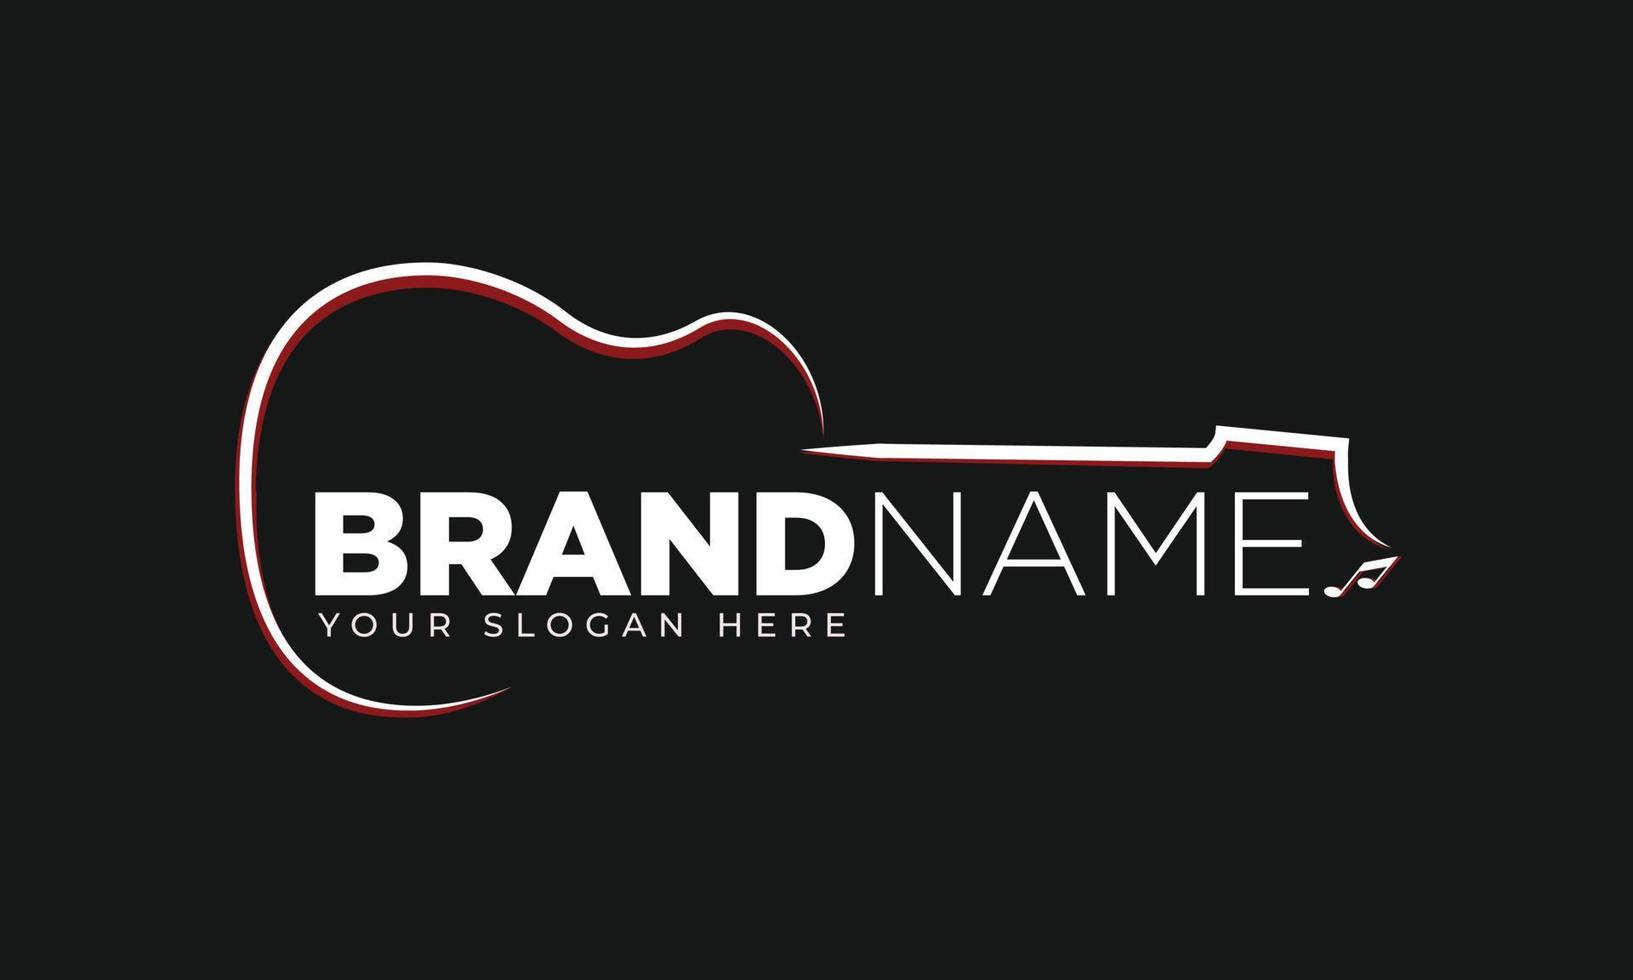 guitar logo. musician logo ideas. inspiration logo design vector